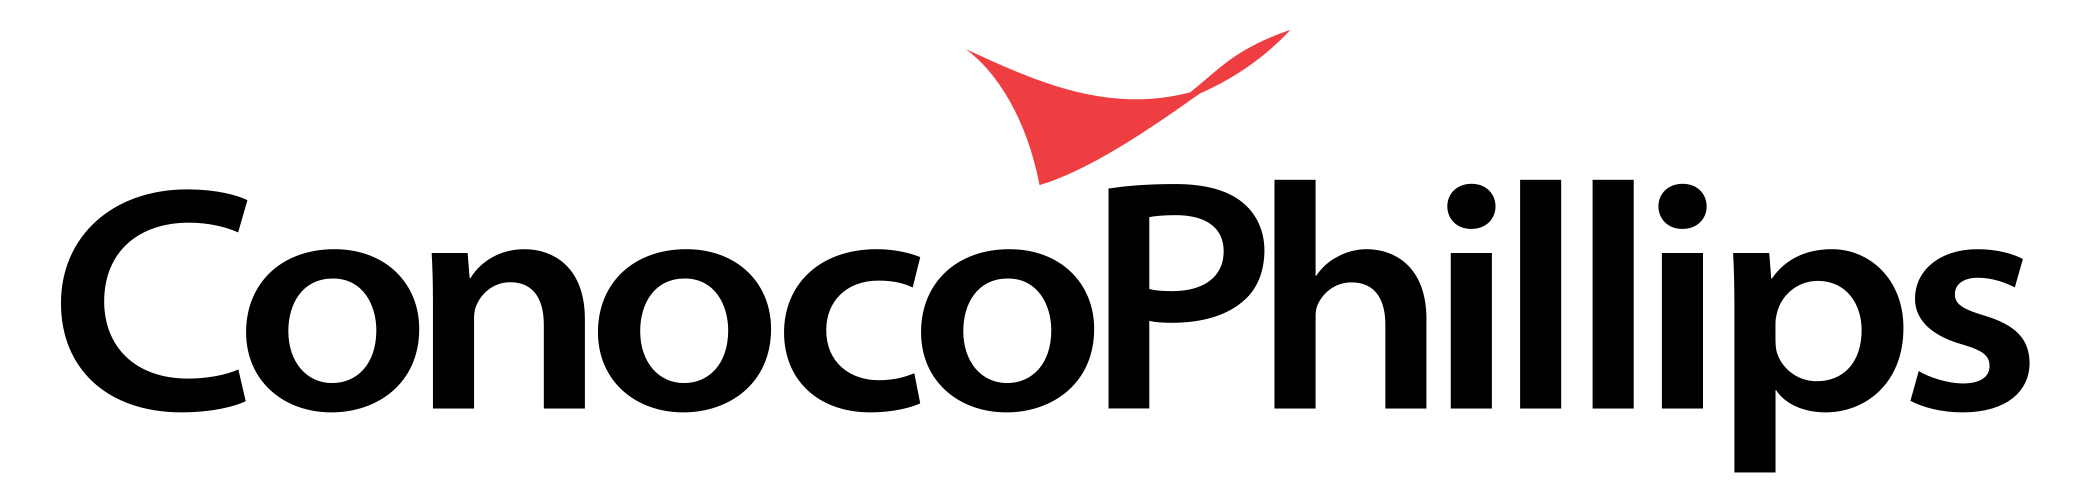 decorative: ConocoPhillips logo